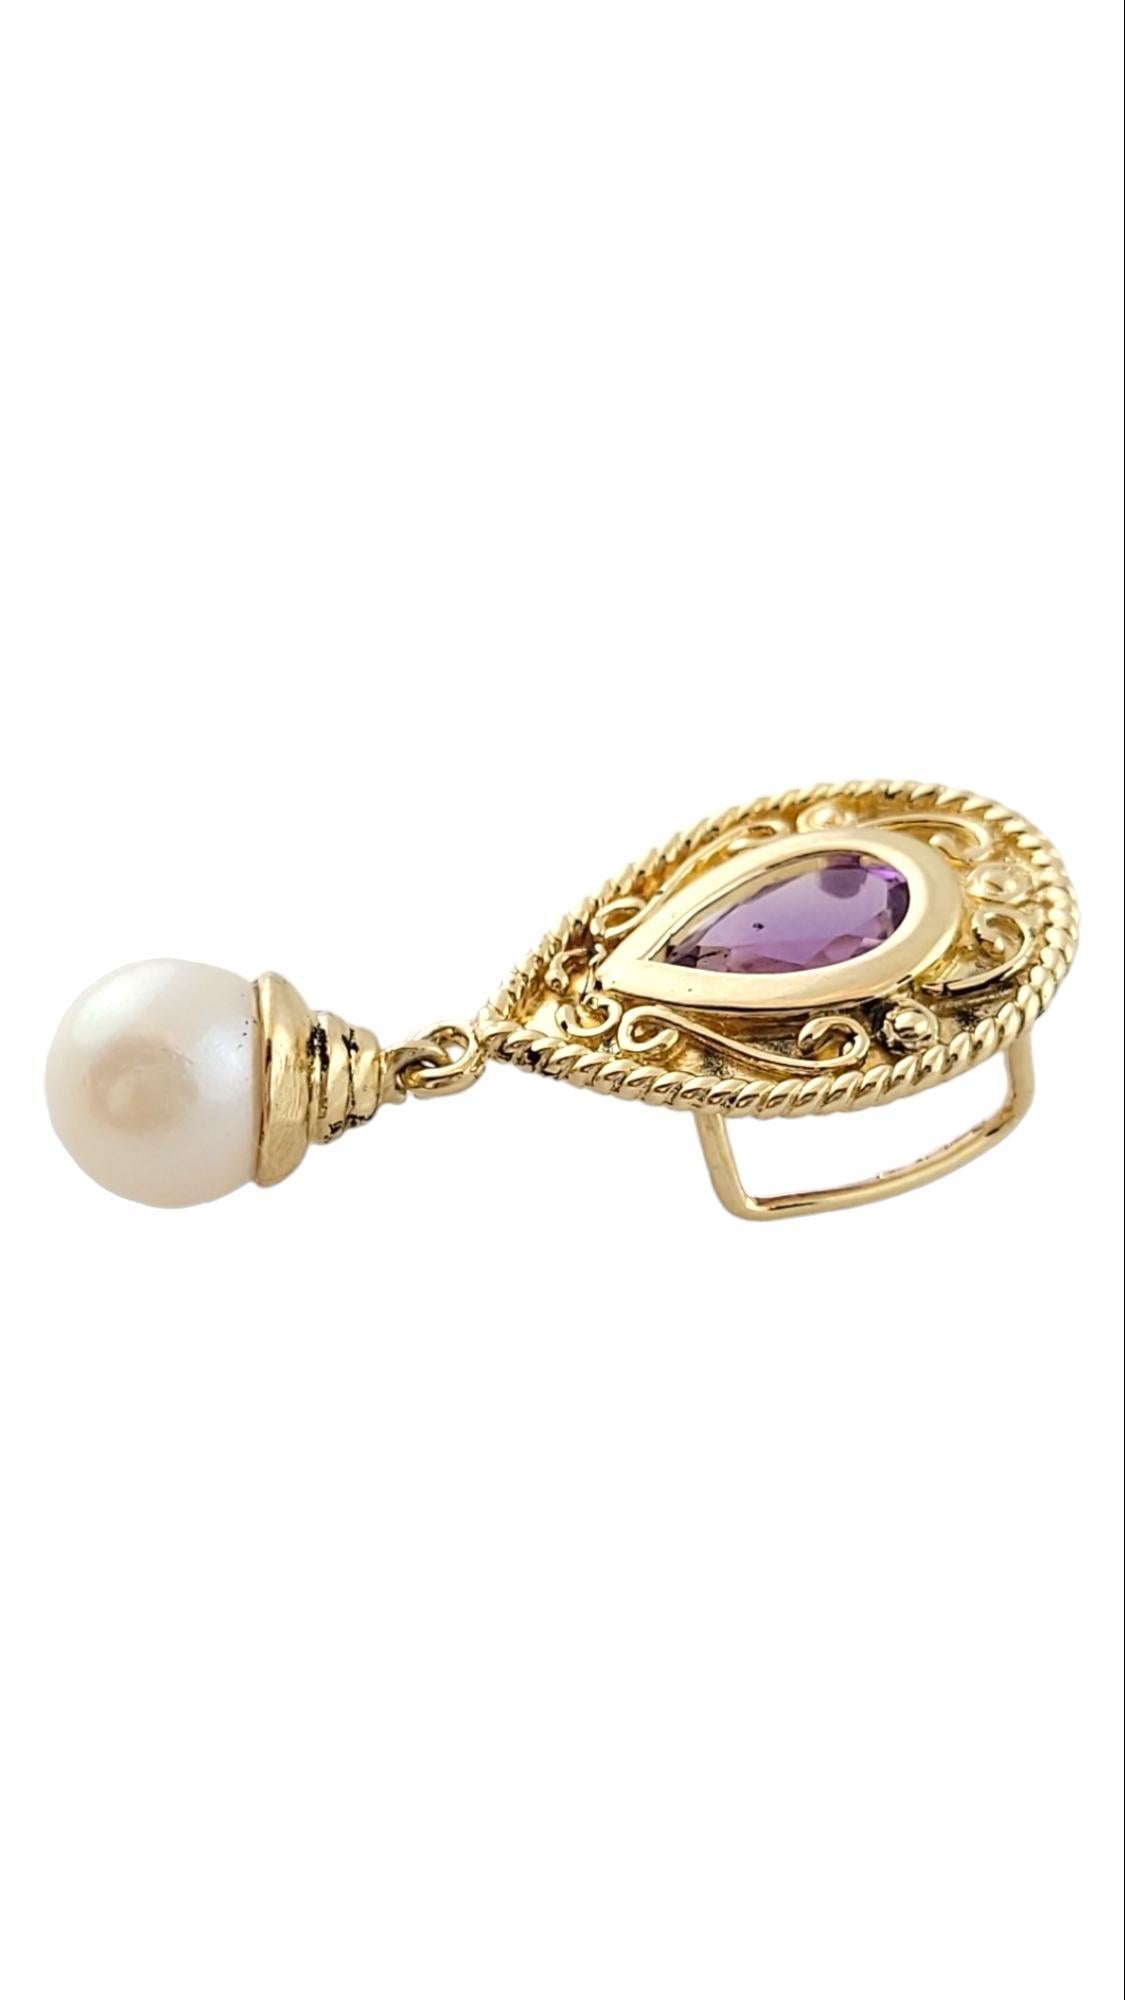 Pendentif vintage en or jaune 14K avec améthyste et perle

Ce magnifique pendentif est orné d'une belle améthyste violette et d'une perle d'eau douce de culture suspendue !

Perle : 6,9 mm

Taille : 29.5mm X 13.4mm X 6.9mm

Poids : 2,5 g/ 1,6